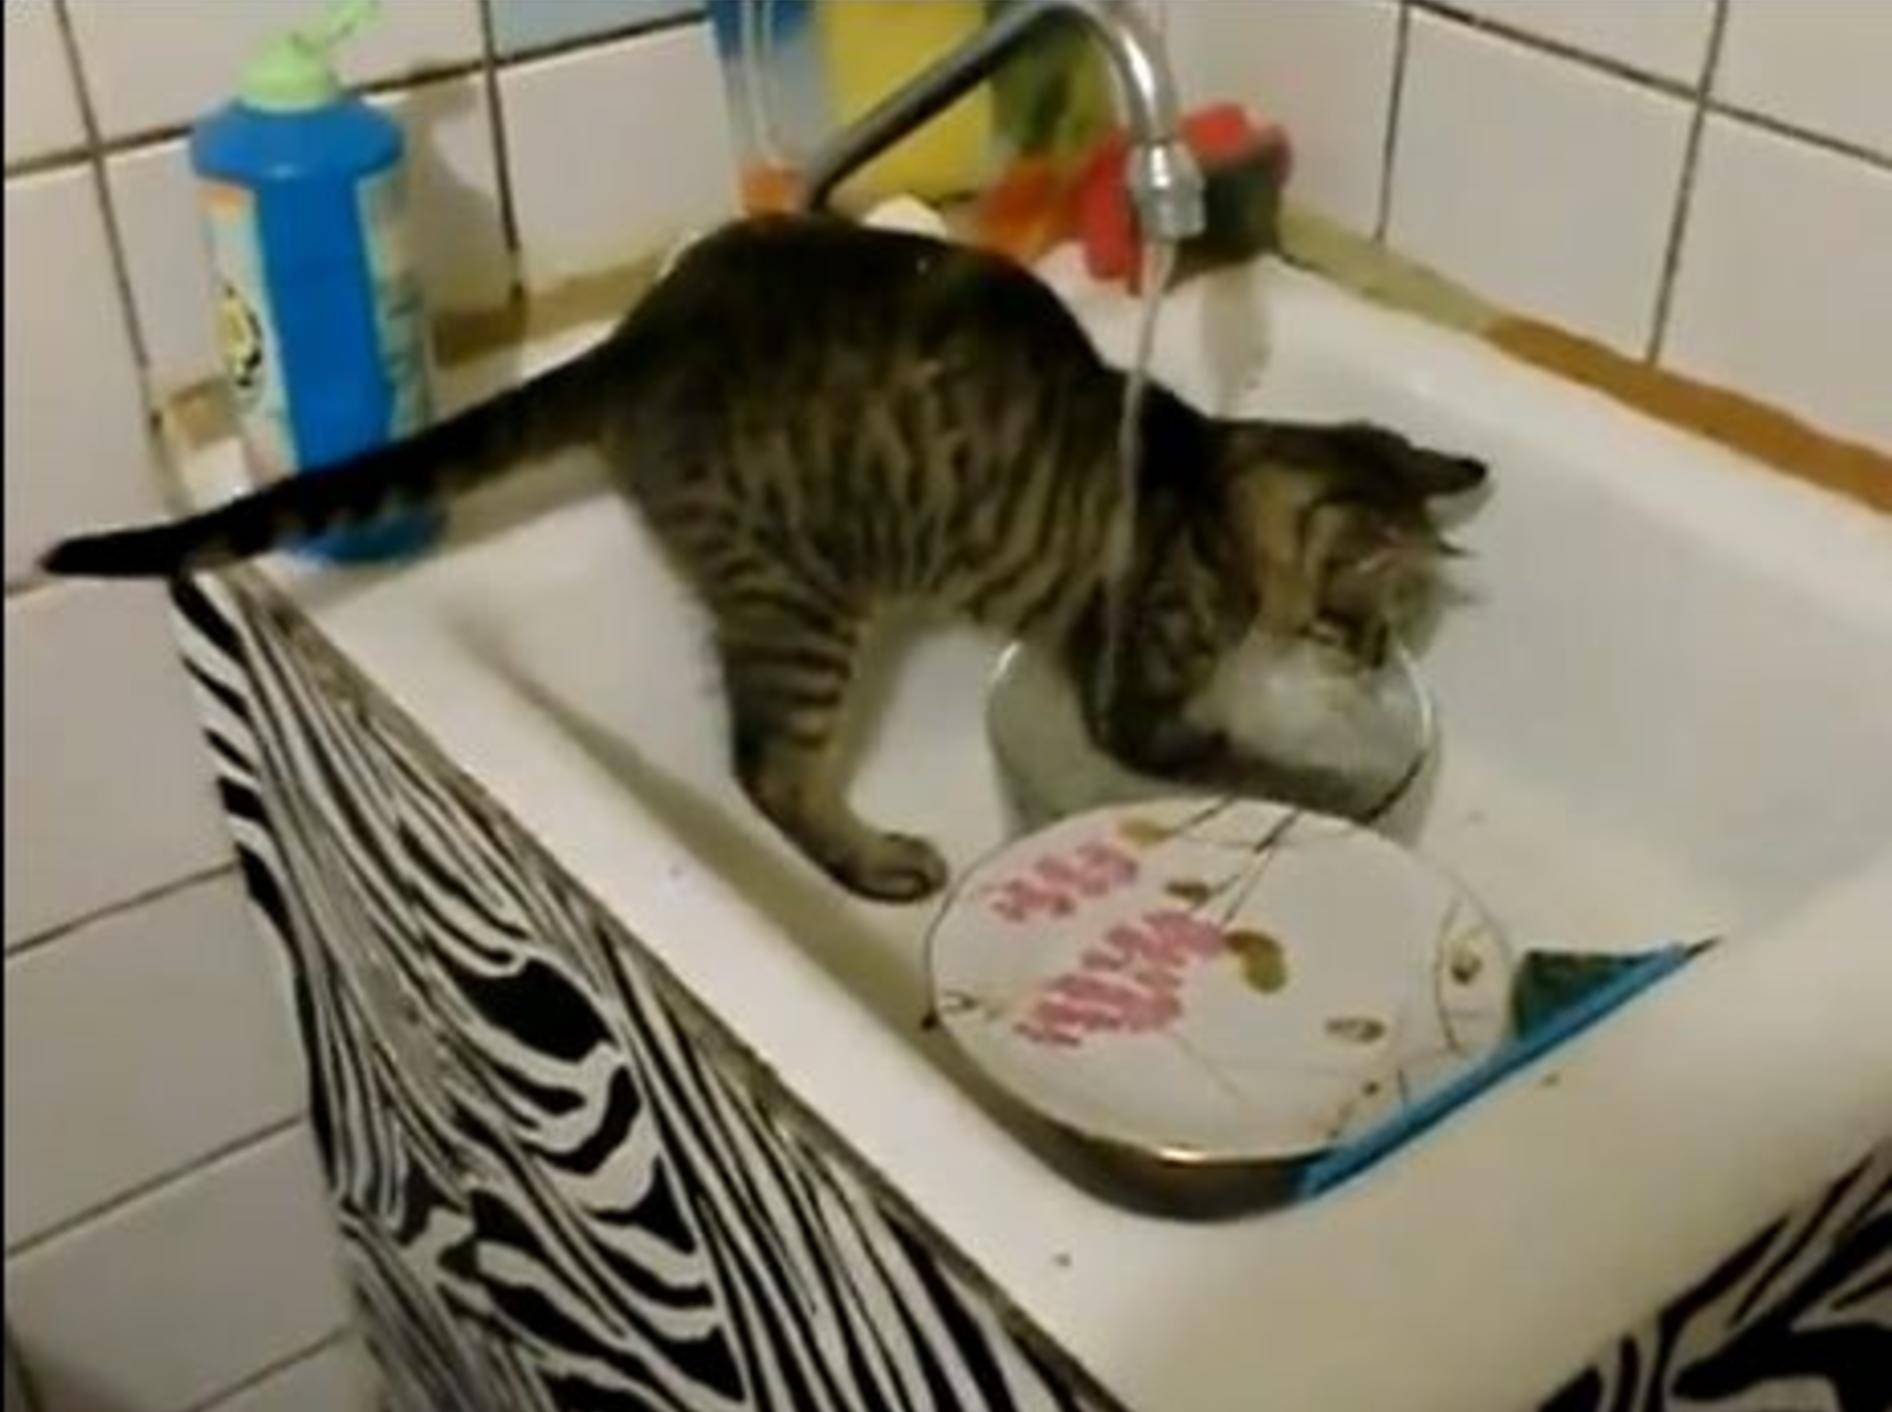 Wie hilfsbereit: Ein Kätzchen macht den Abwasch — Bild: Youtube / Mr7funny